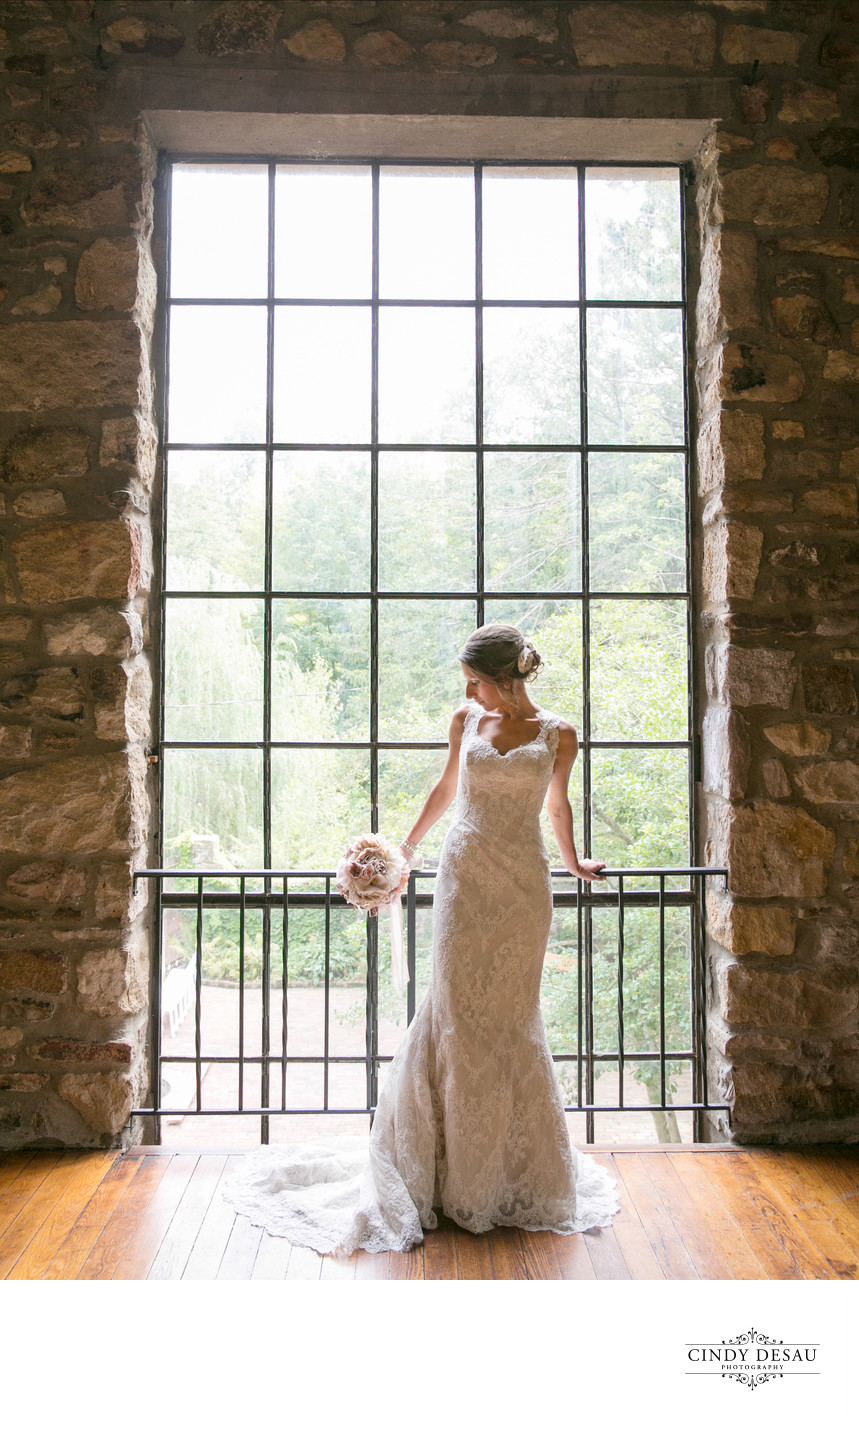 Amazing Barn Window Wedding Photo in New Hope